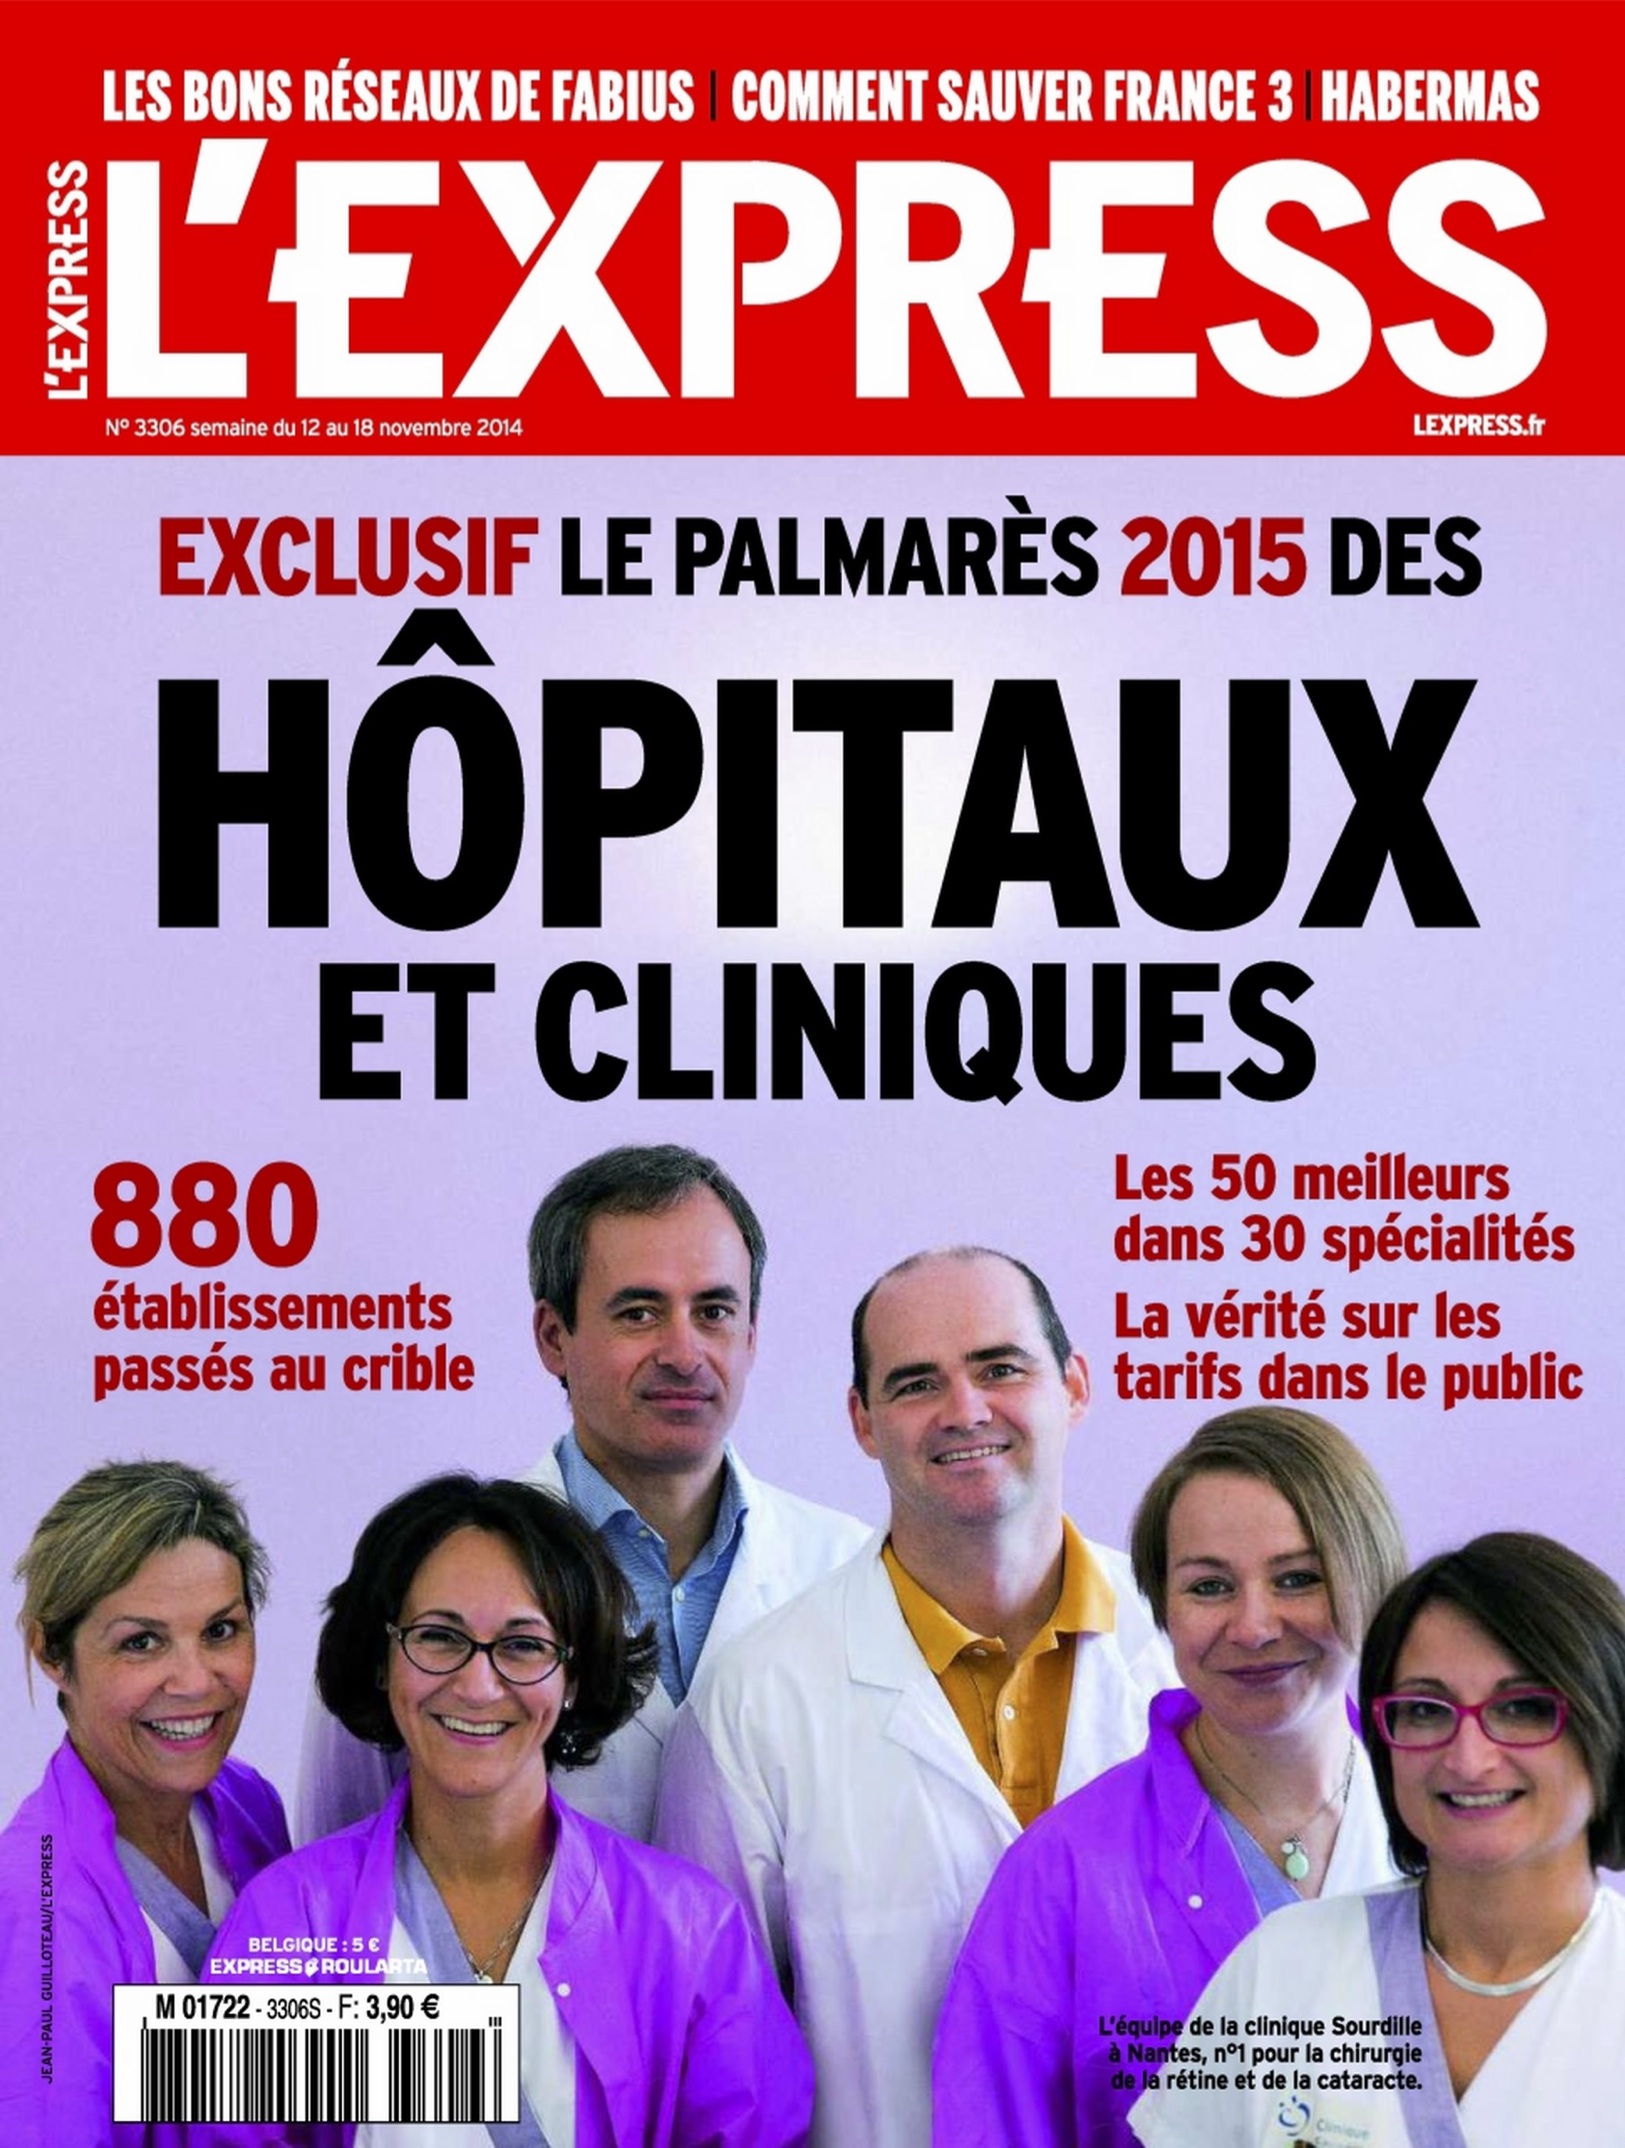 L'Express - Palmarès 2015 des Hôpitaux et Cliniques : Clinique Geoffroy Saint Hilaire, 1er établissement privé à Paris pour la Chirurgie du Pied !